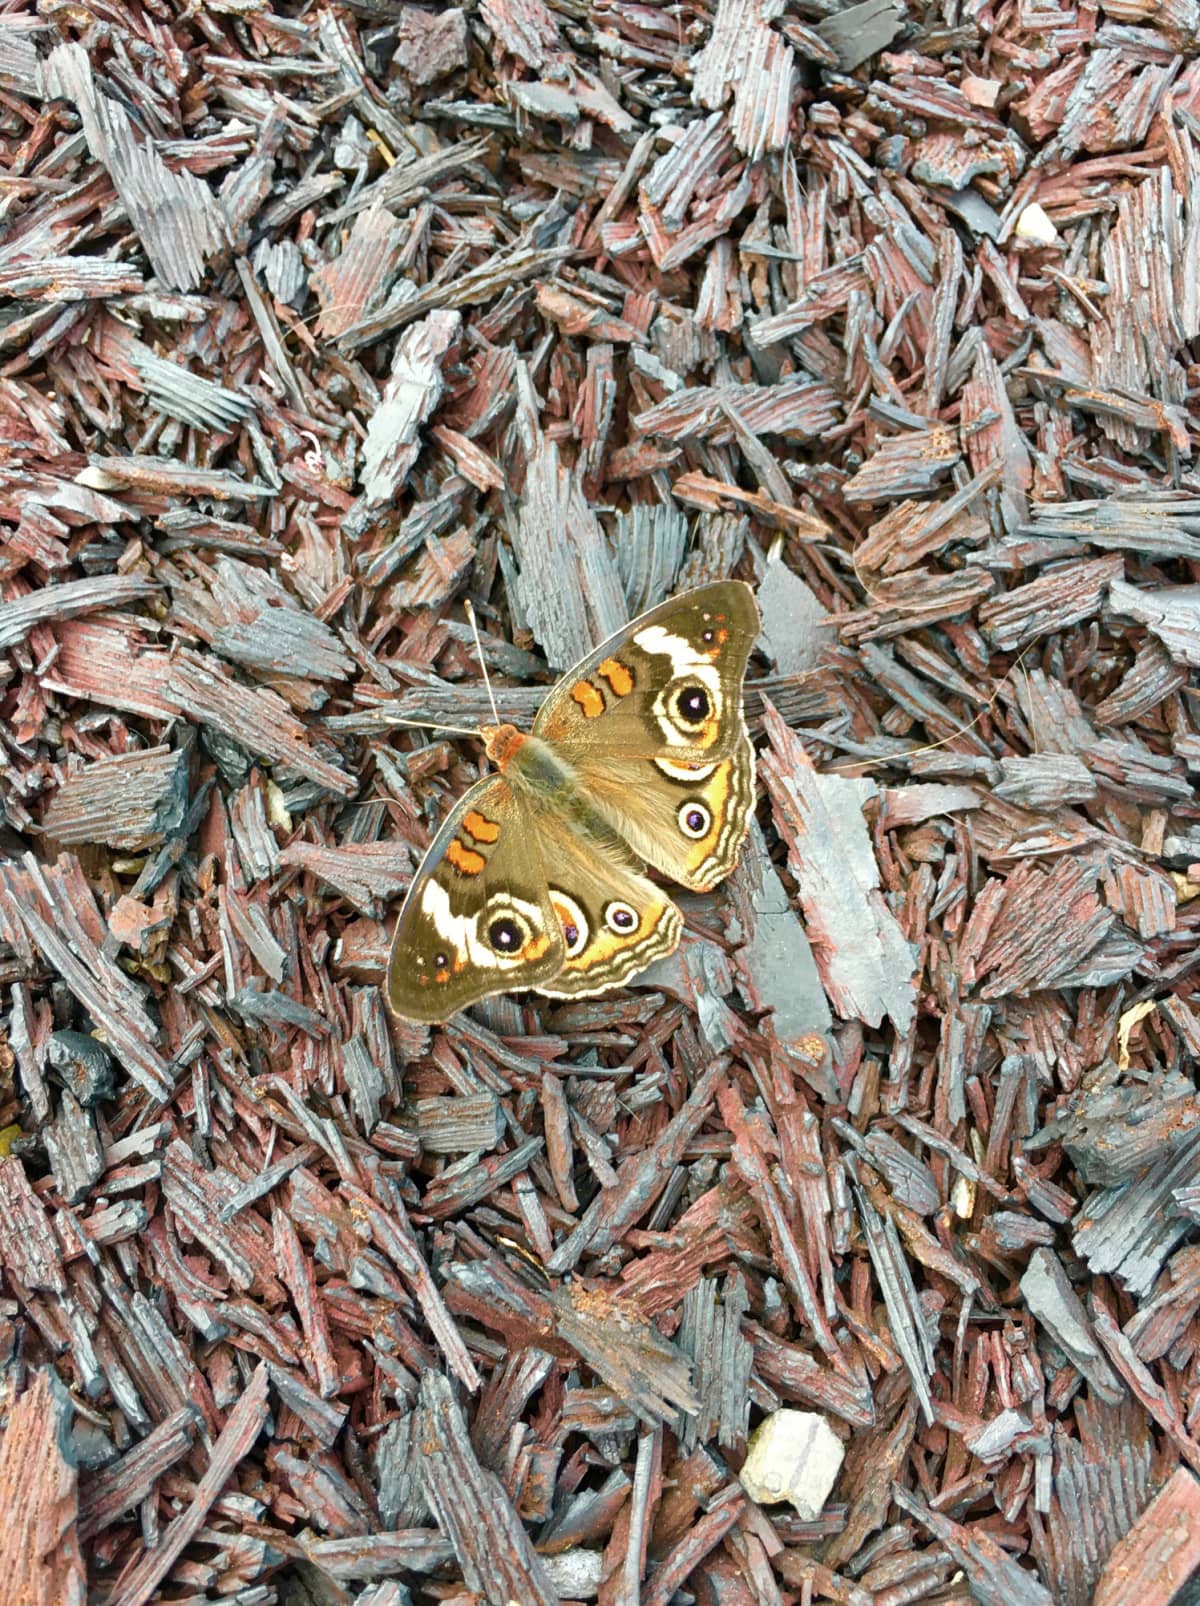 Moth sitting on mulch